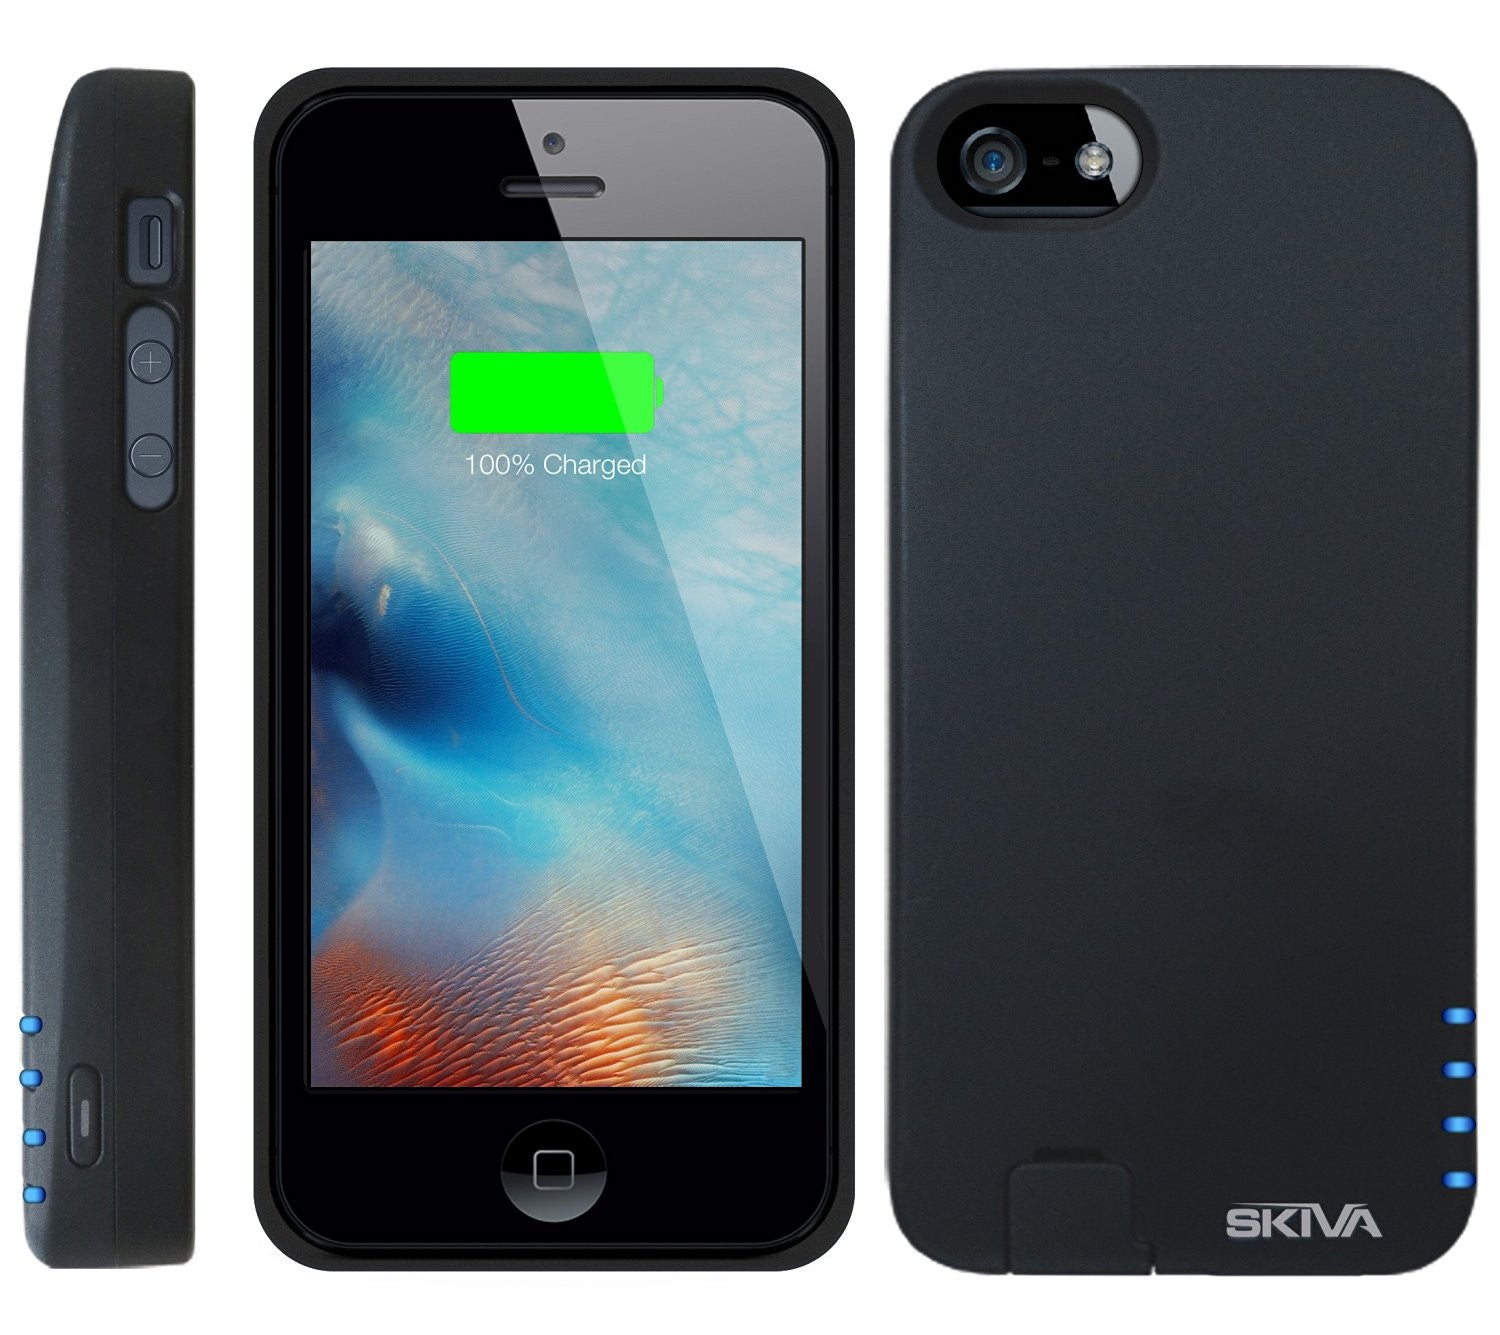 regering Lief vrije tijd Apple MFi Certified] Skiva PowerFlow 2000mAh iPhone SE[4"] / 5s Porta